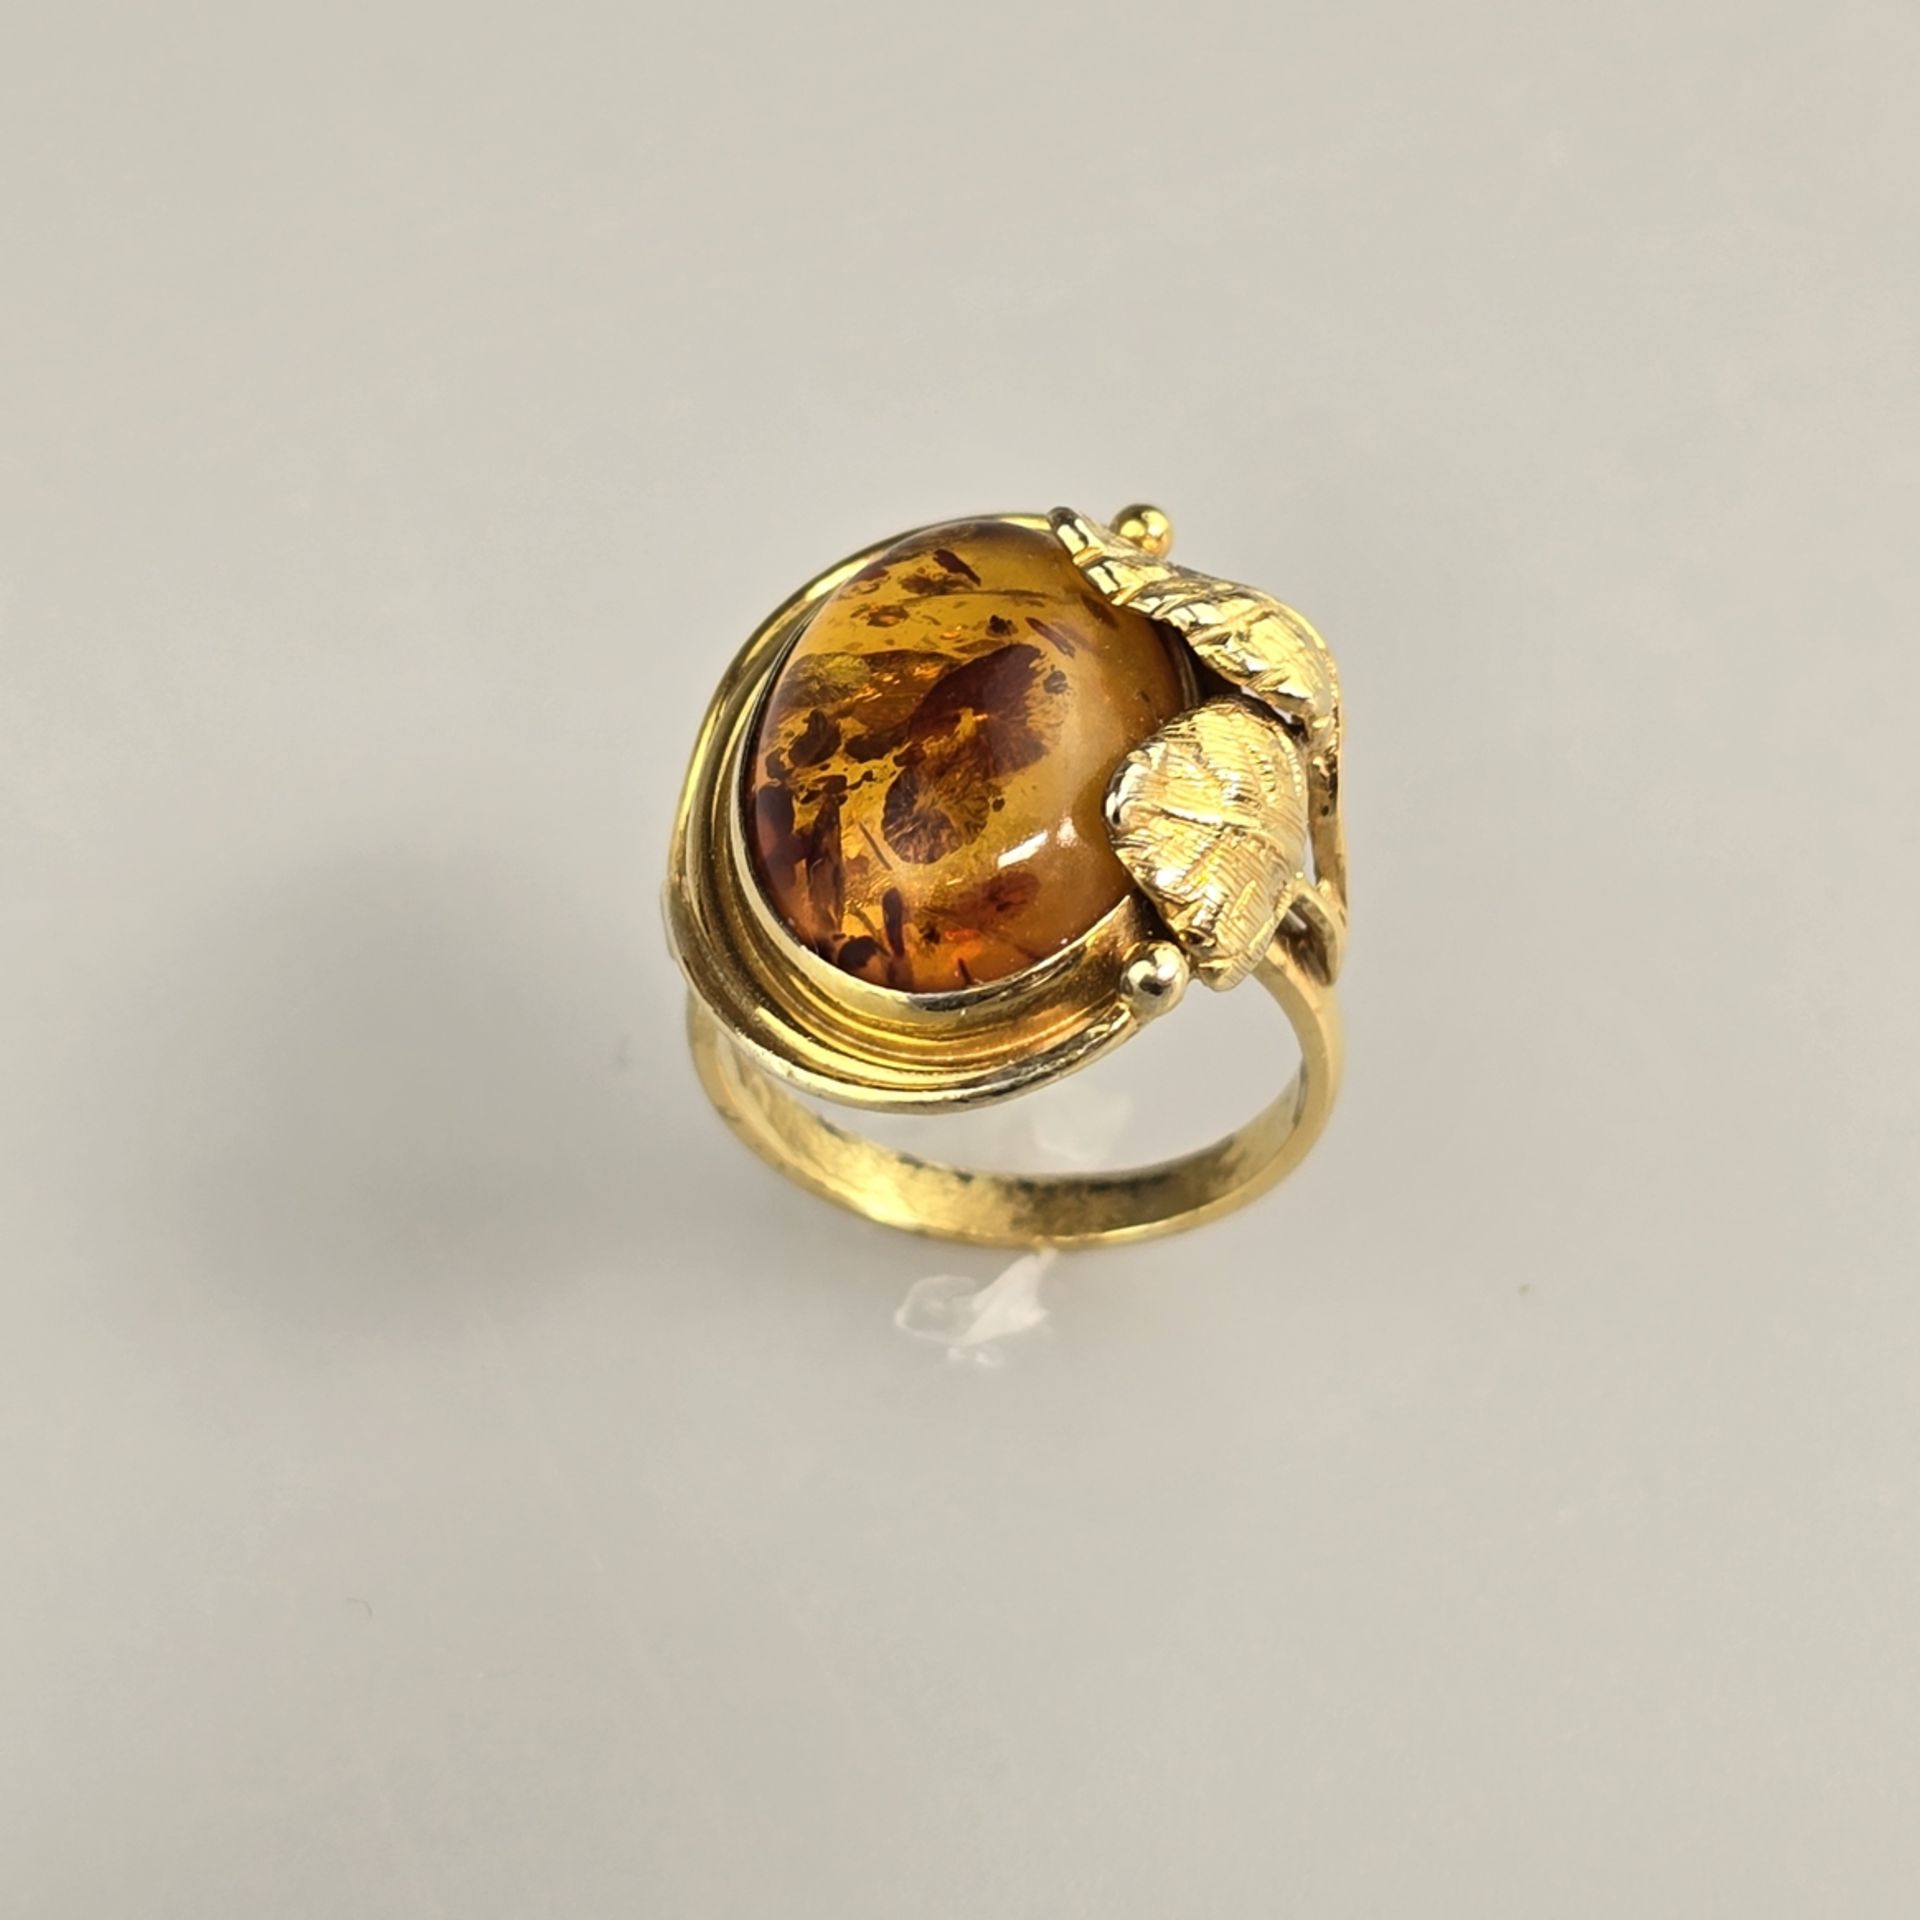 Bernsteinring - Silber 925/000, vergoldet, außen gestempelt, Bernstein von ca.18 x 12 mm, Ringgröße - Image 3 of 8